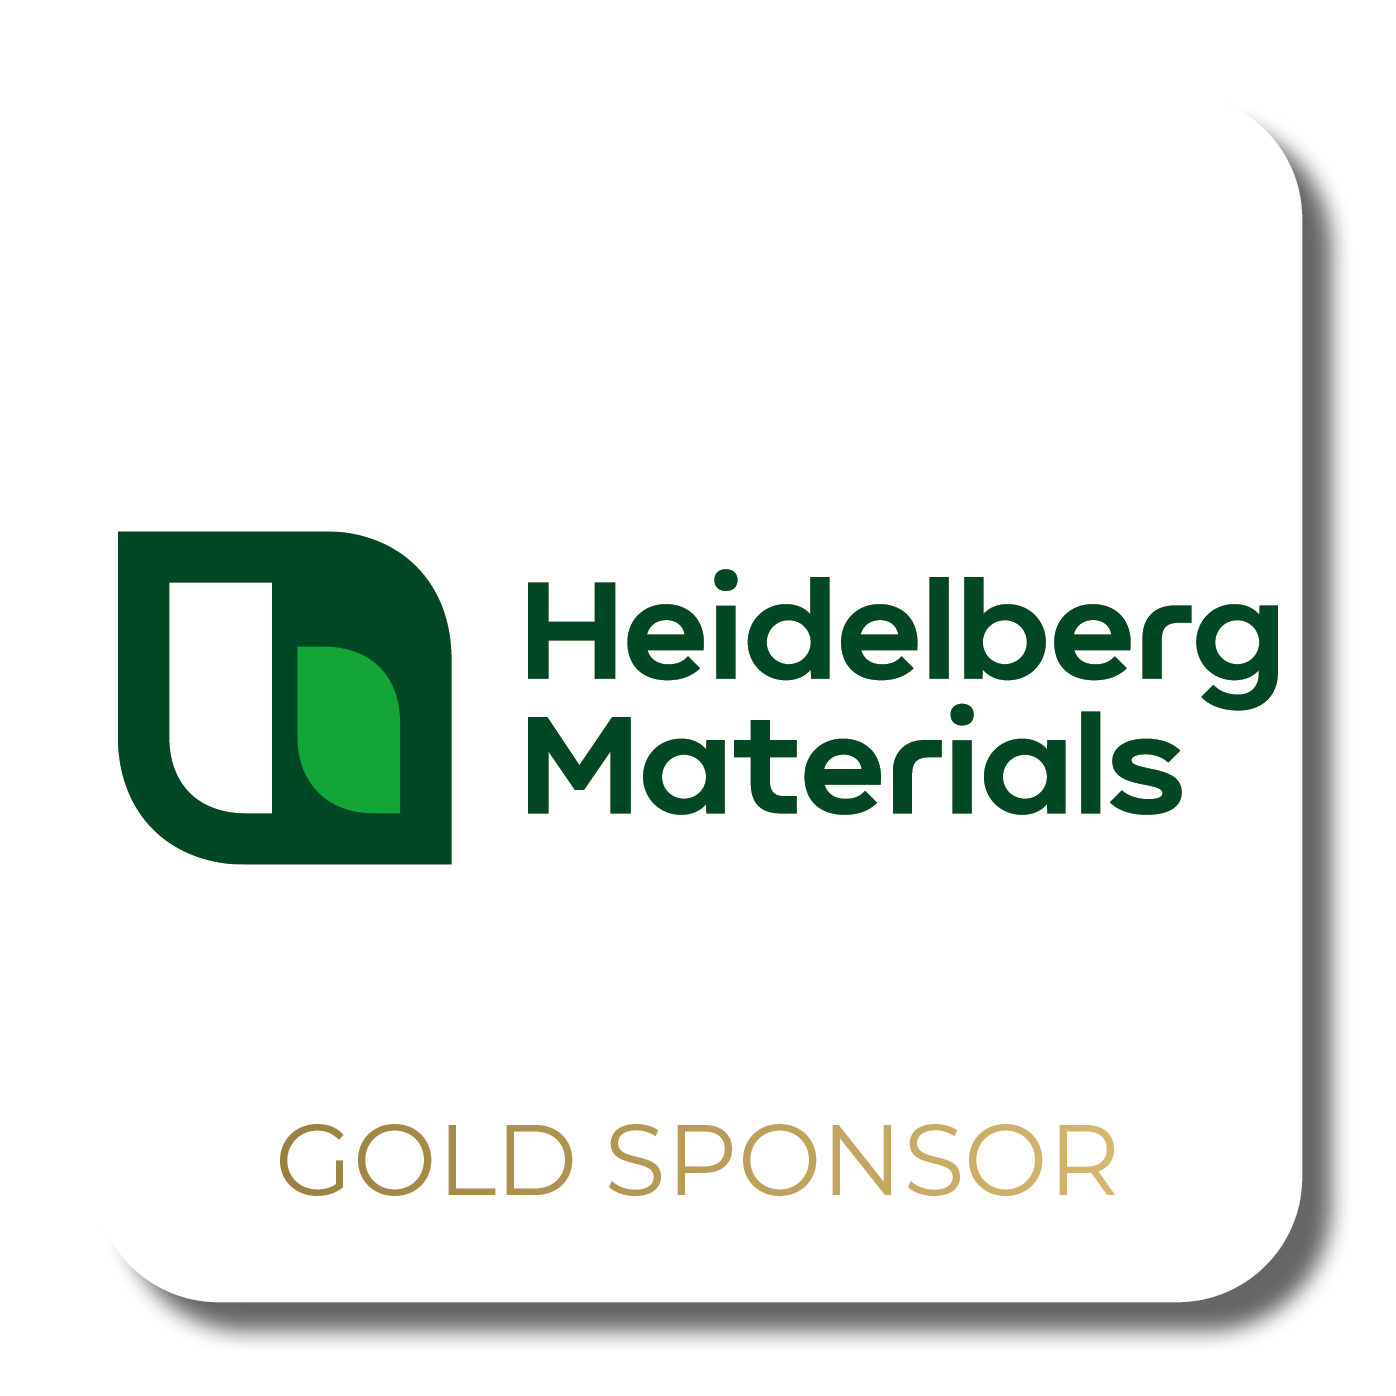 Heidelberg Materials Gold